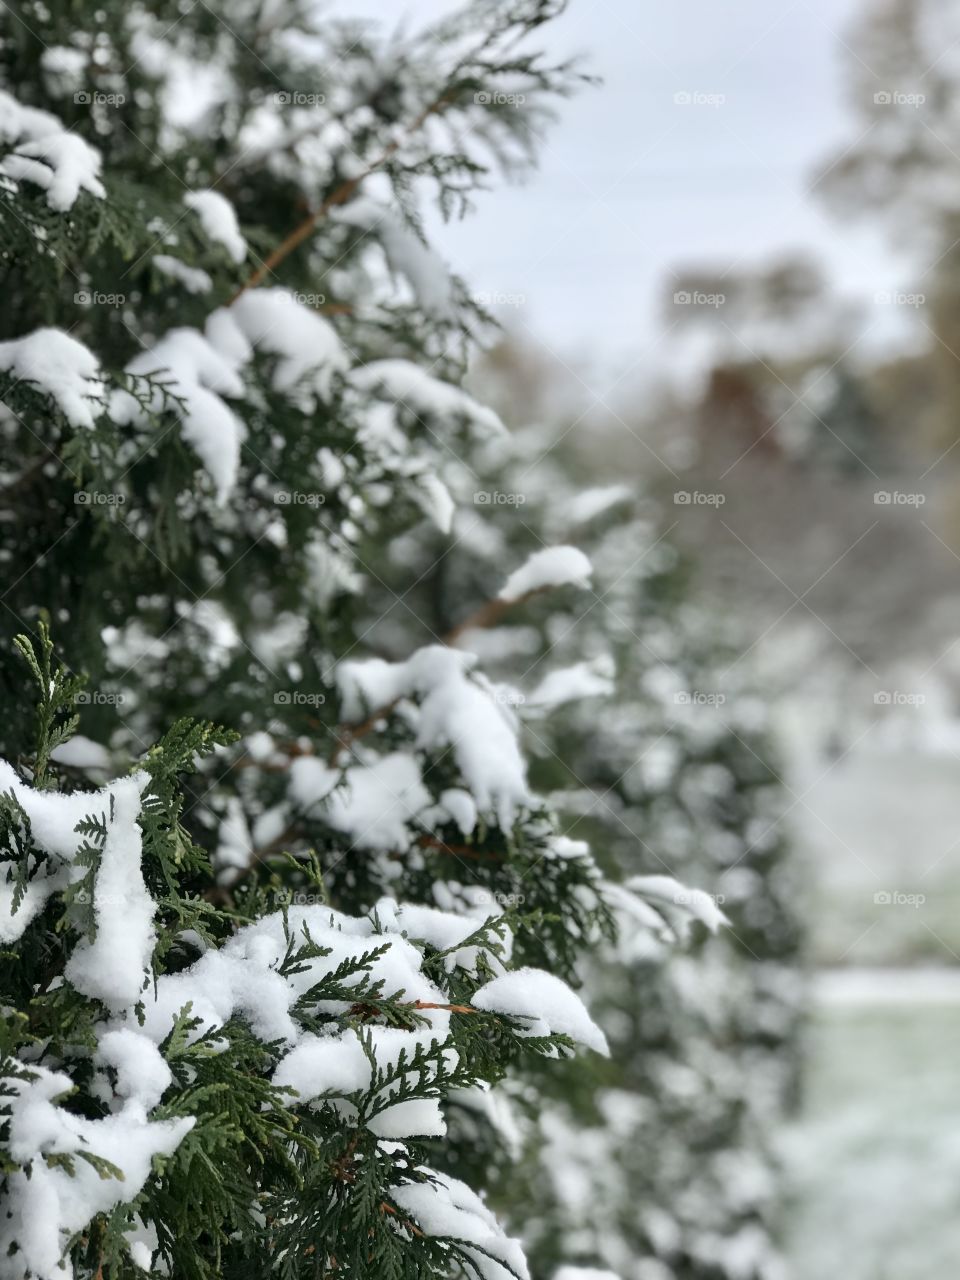 Snow on shrubs